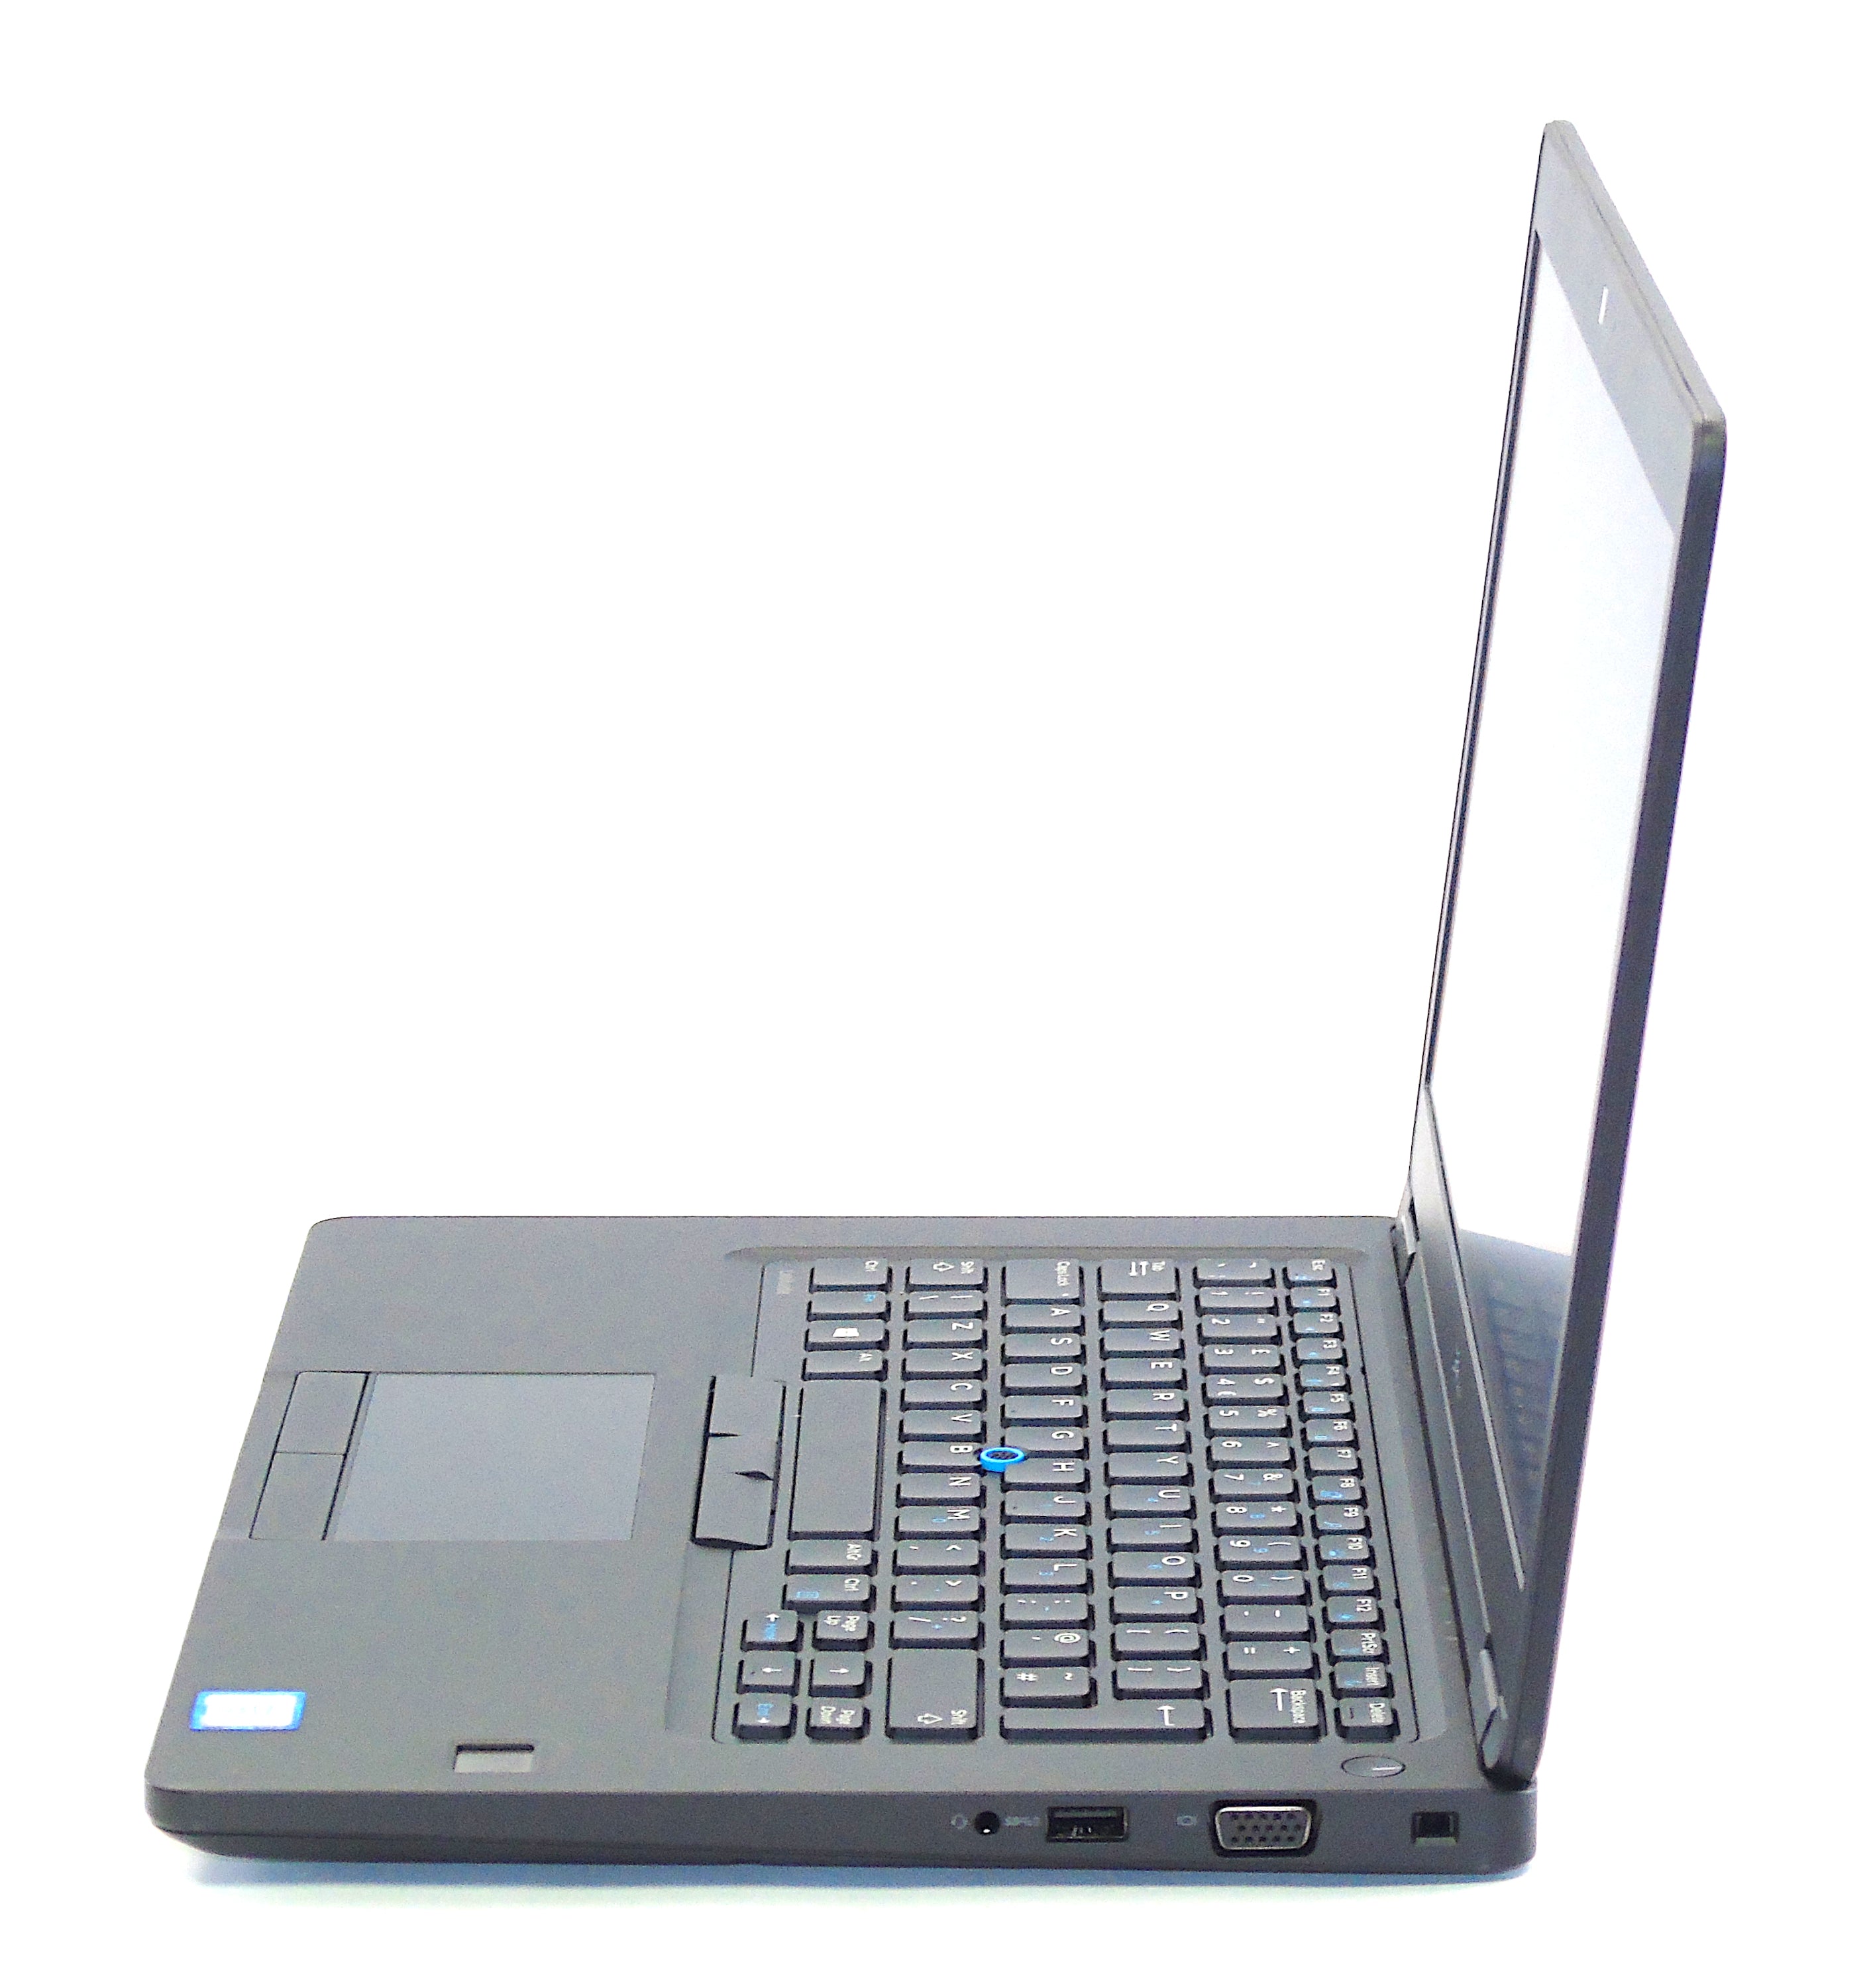 Dell Latitude 5480 Laptop, 14" Core i5 7th Gen, 8GB RAM, 256GB SSD